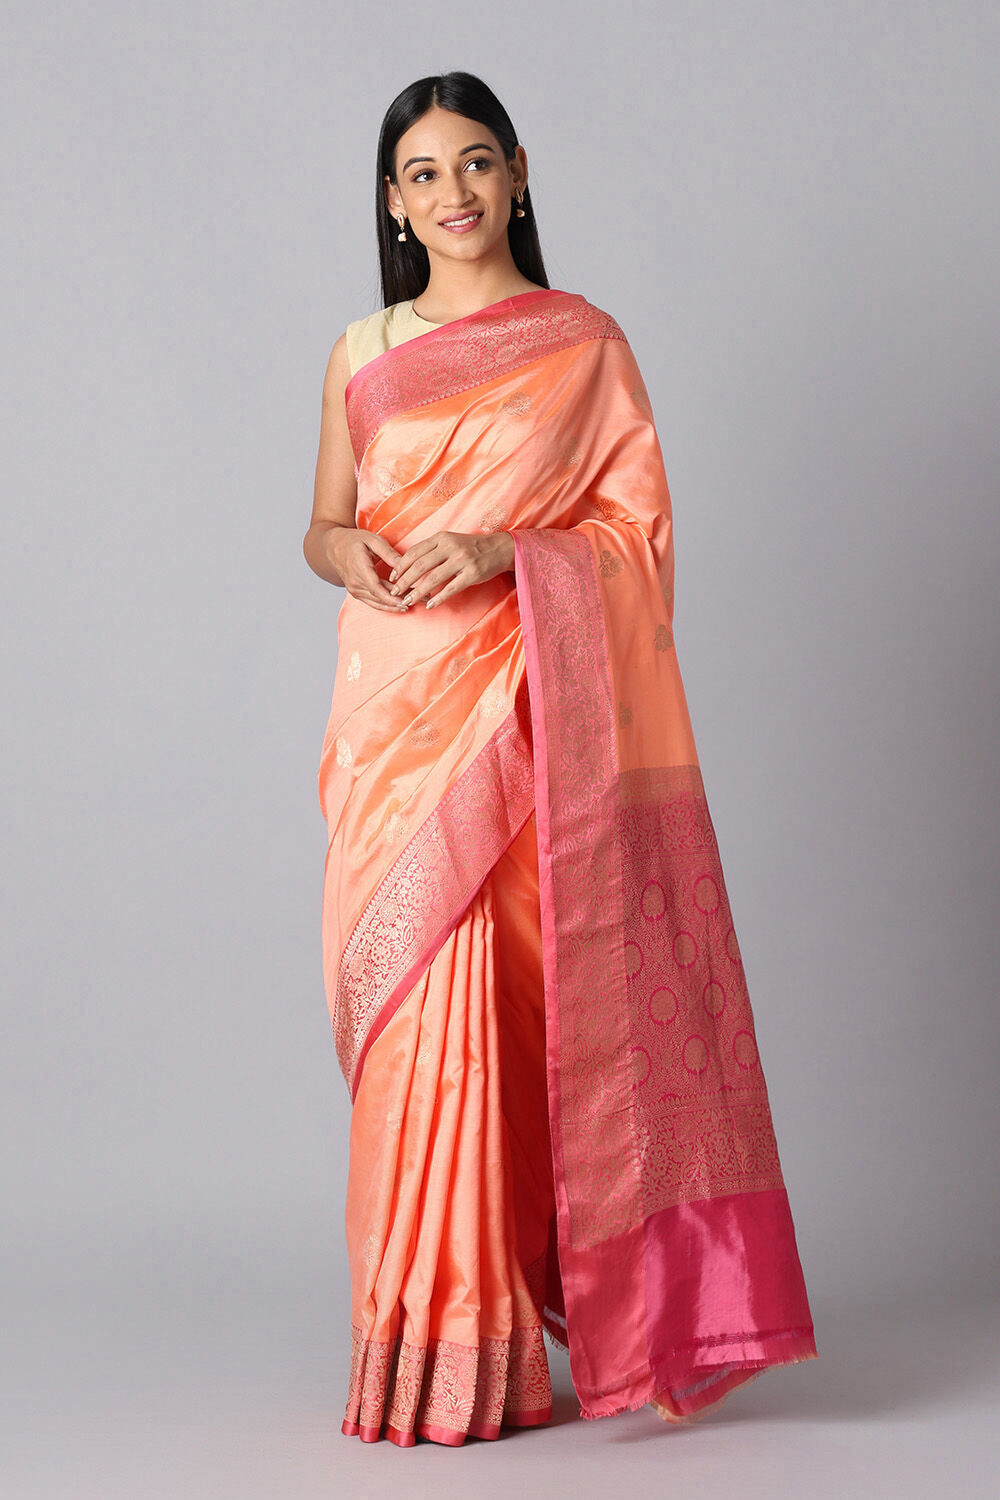 Gudi Padwa Saree Collection | Taneira - A Tata Product